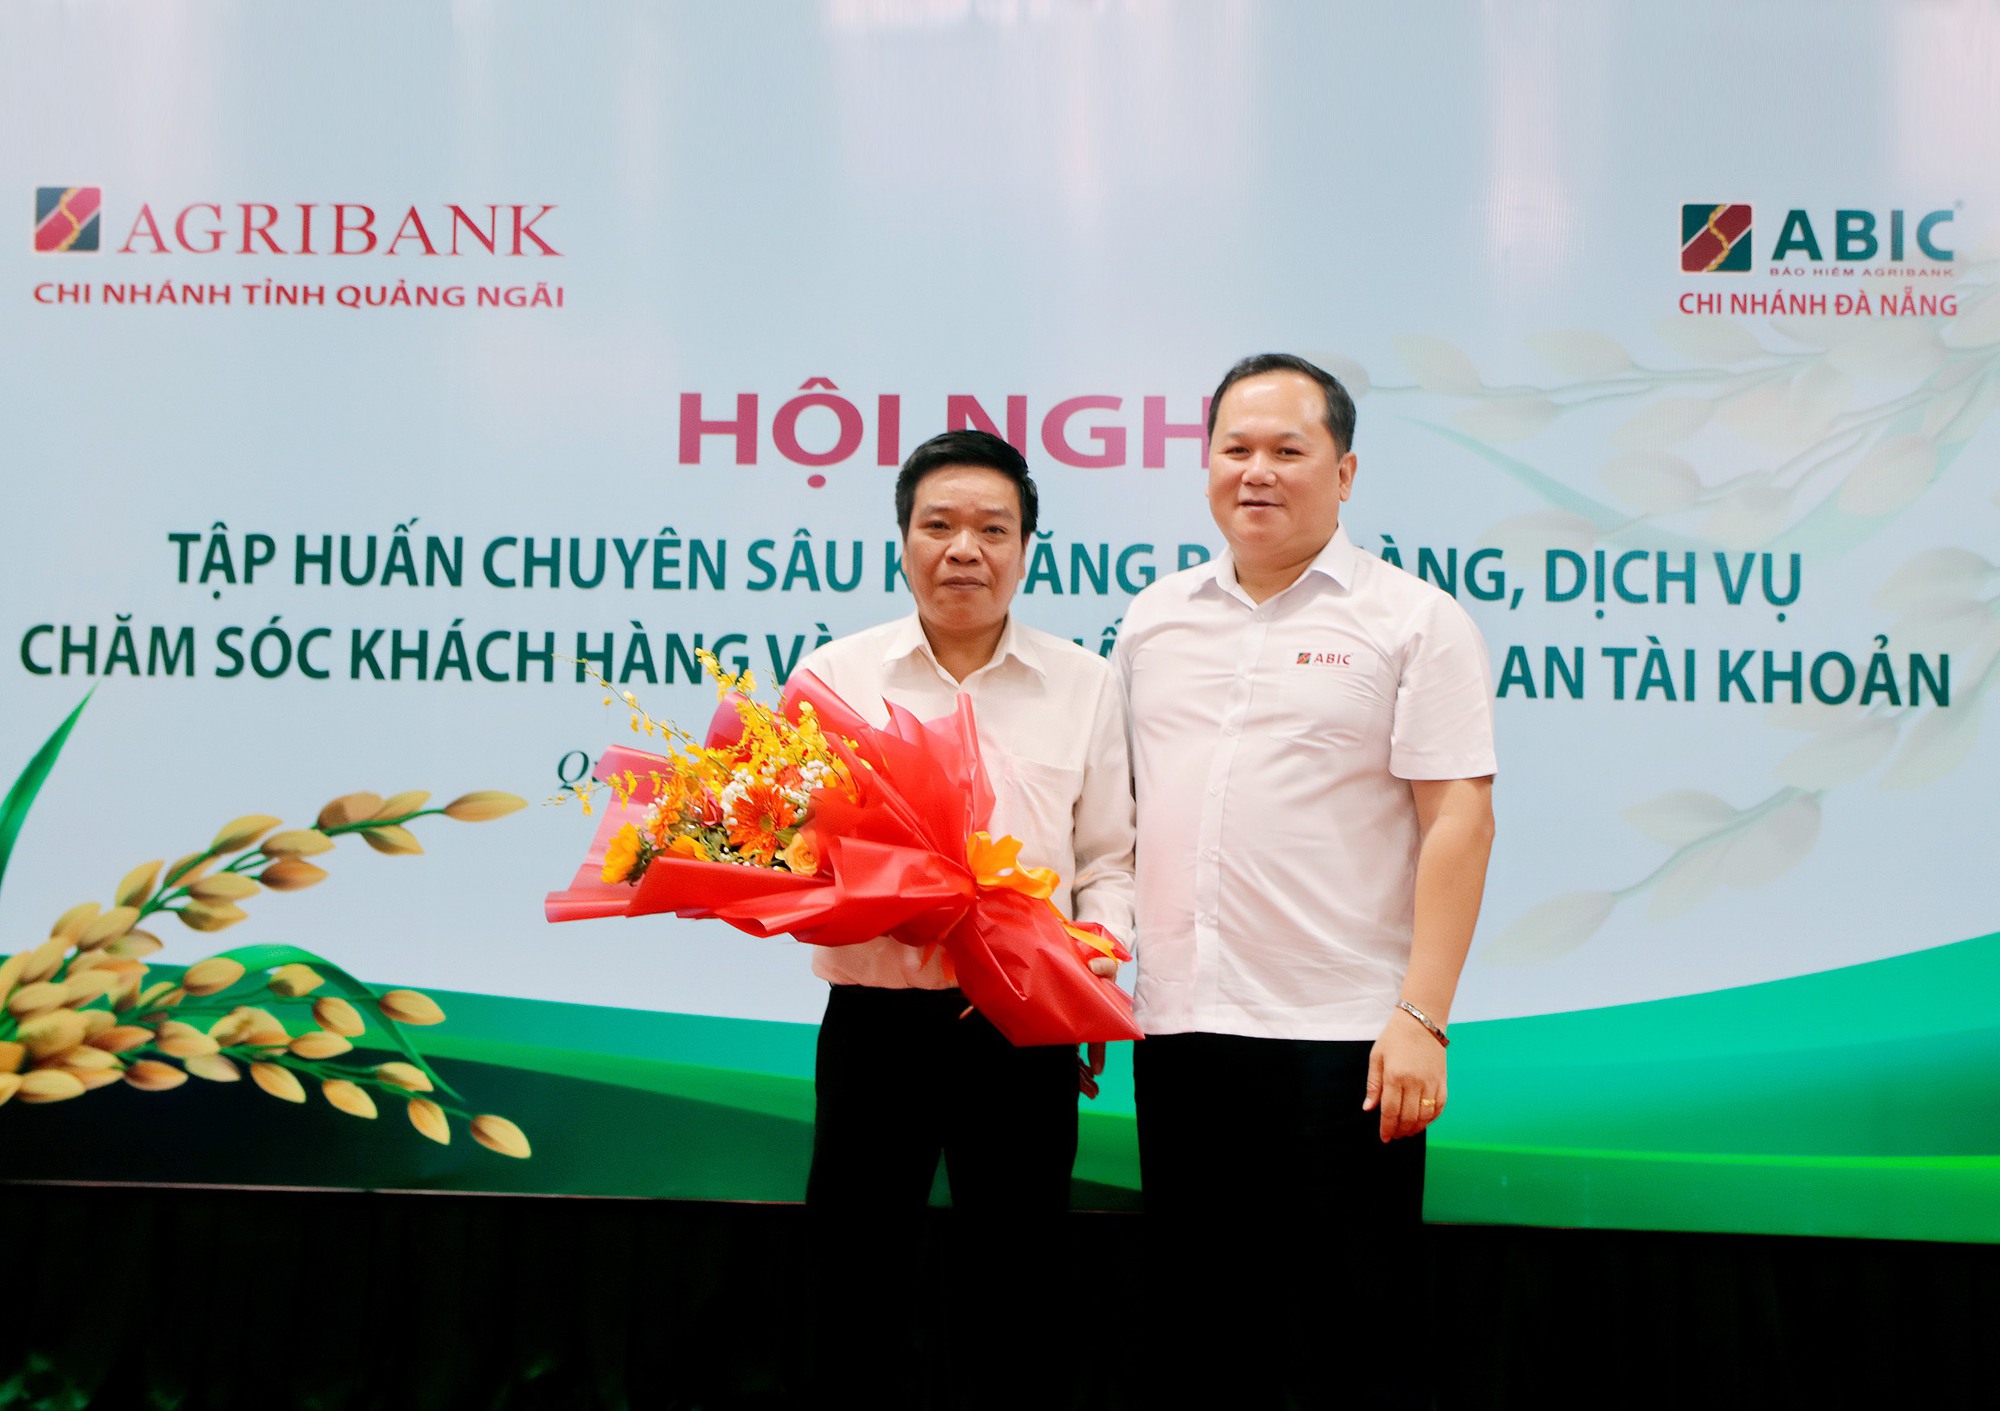 Bảo hiểm Agribank Đà Nẵng tổ chức hội nghị nâng cao kỹ năng, nghiệp vụ chăm sóc khách hàng - Ảnh 2.